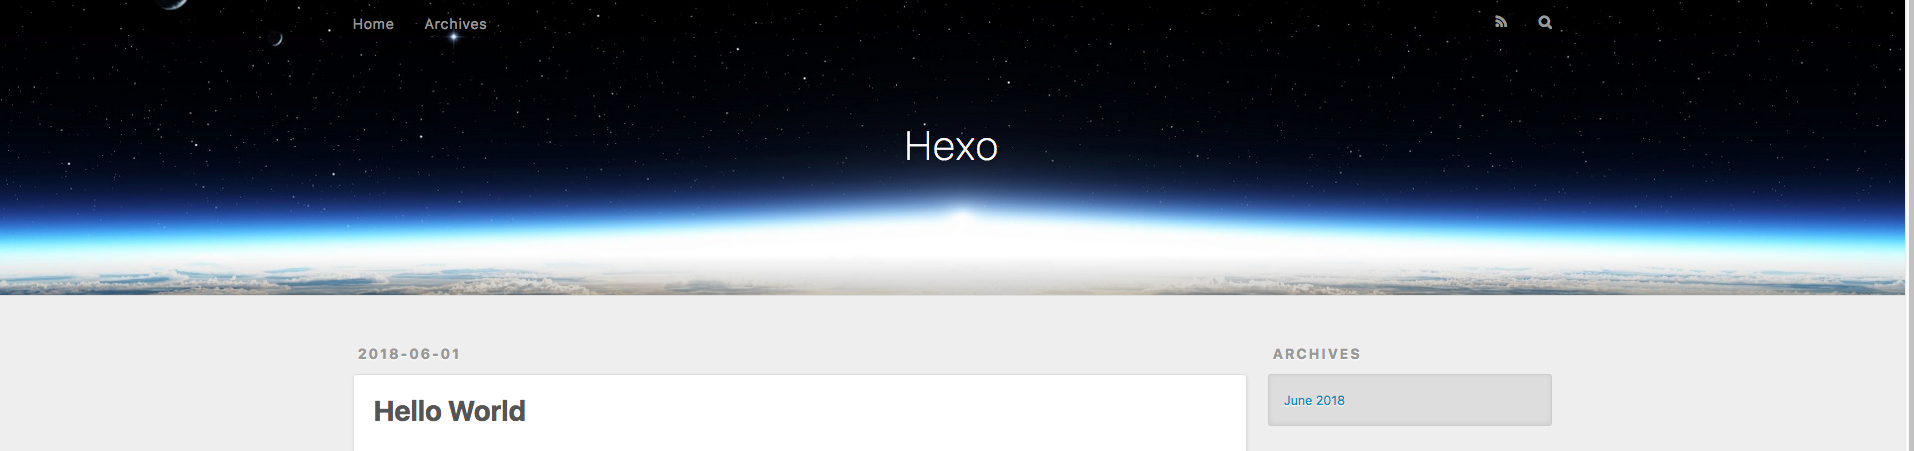 搭建Hexo博客（一）－创建Hexo环境